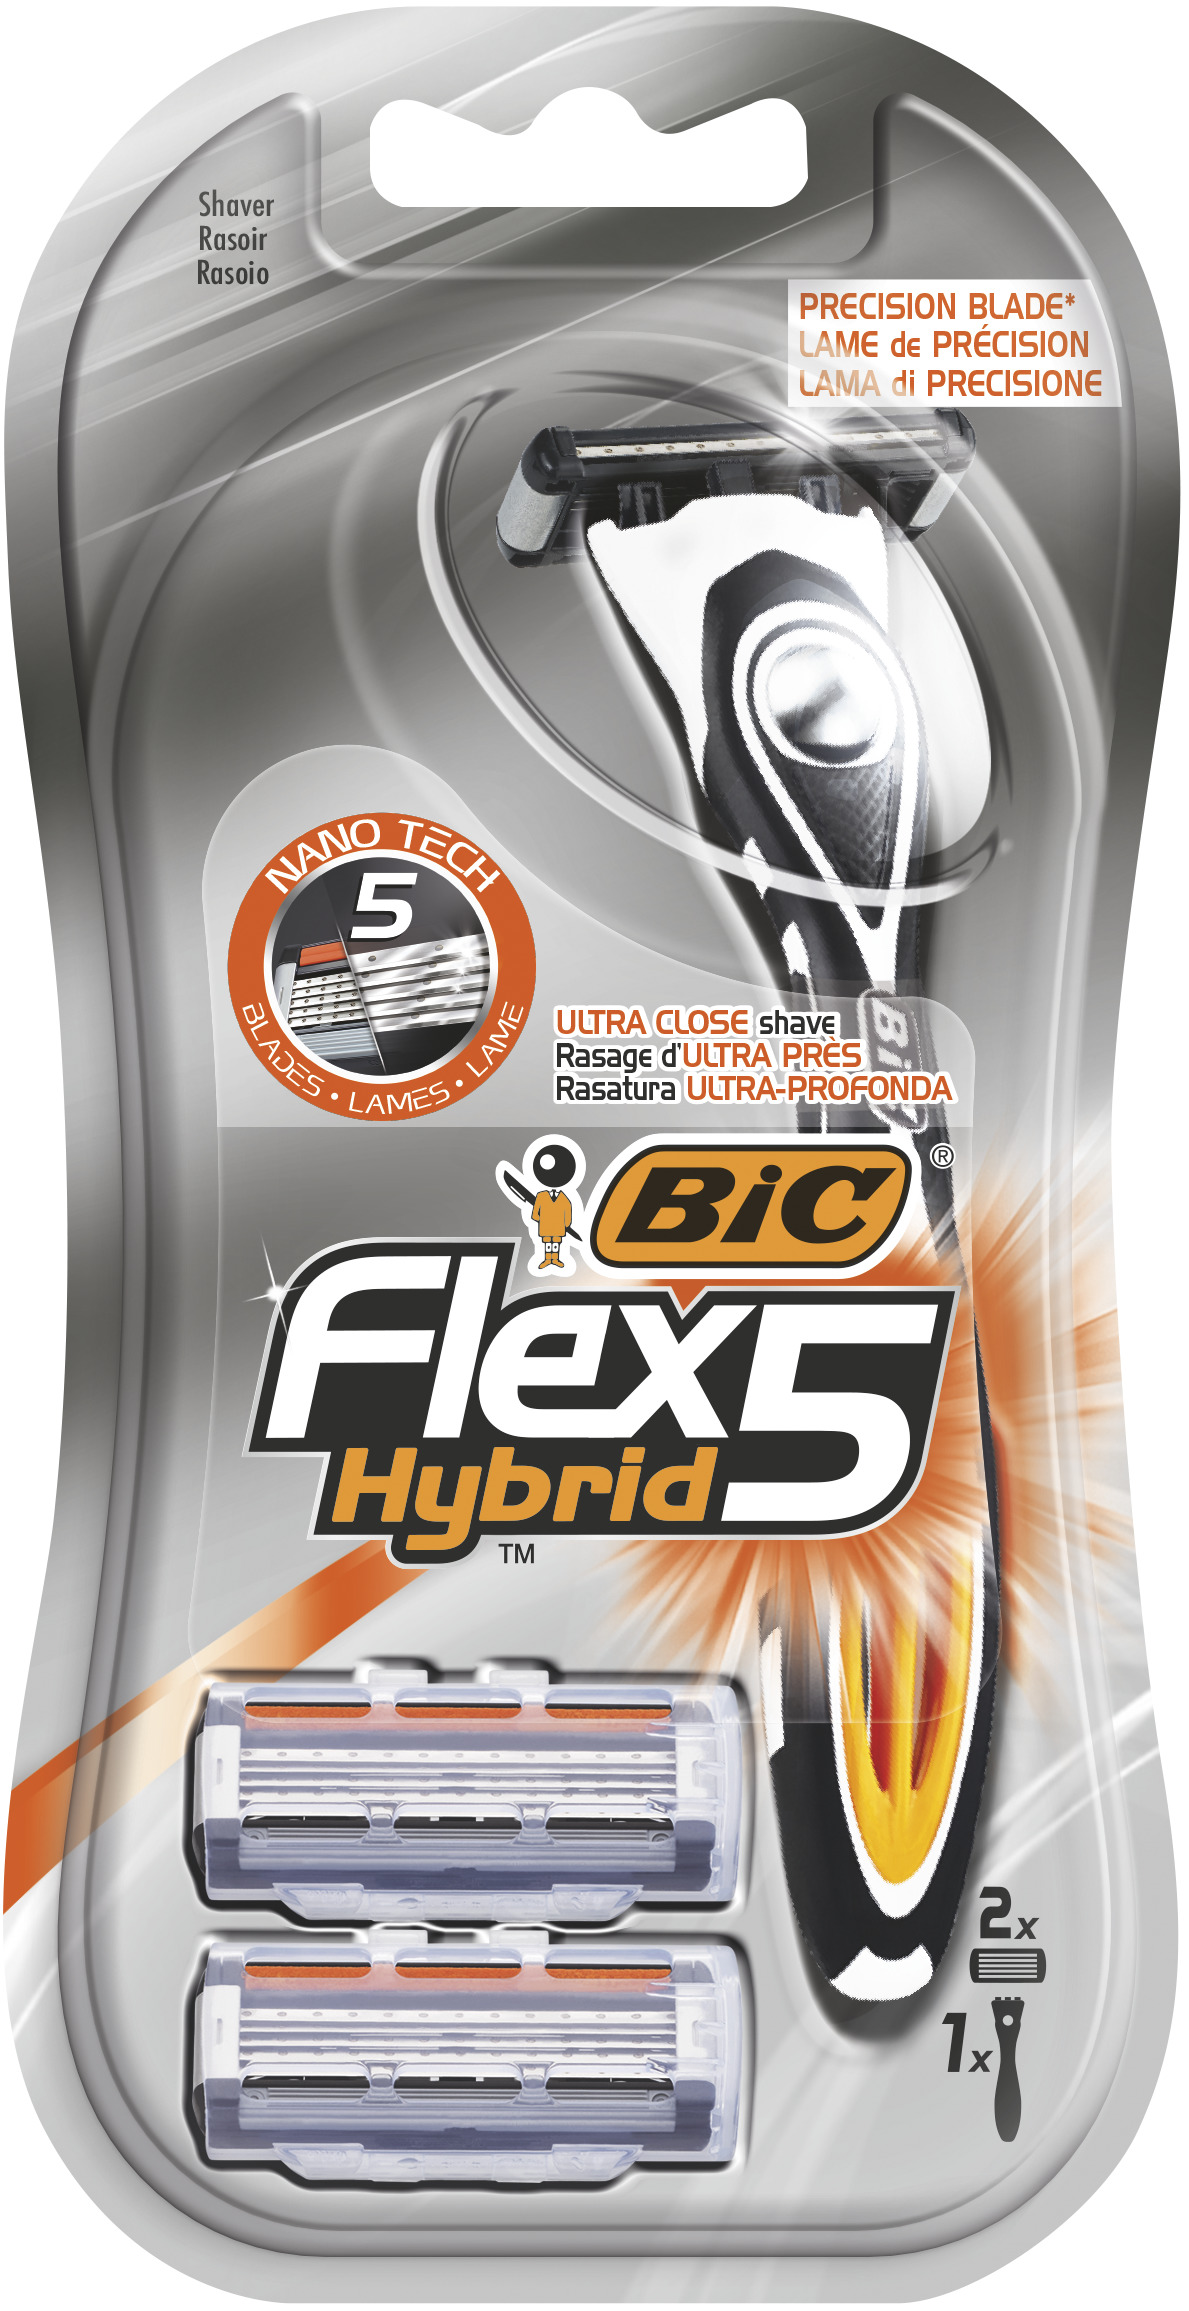 Станок для бритья BIC Flex 5 Hybrid + 2 кассеты бритвенный станок bic hybrid 5 flex 5 лезвий 2 кассеты мужской